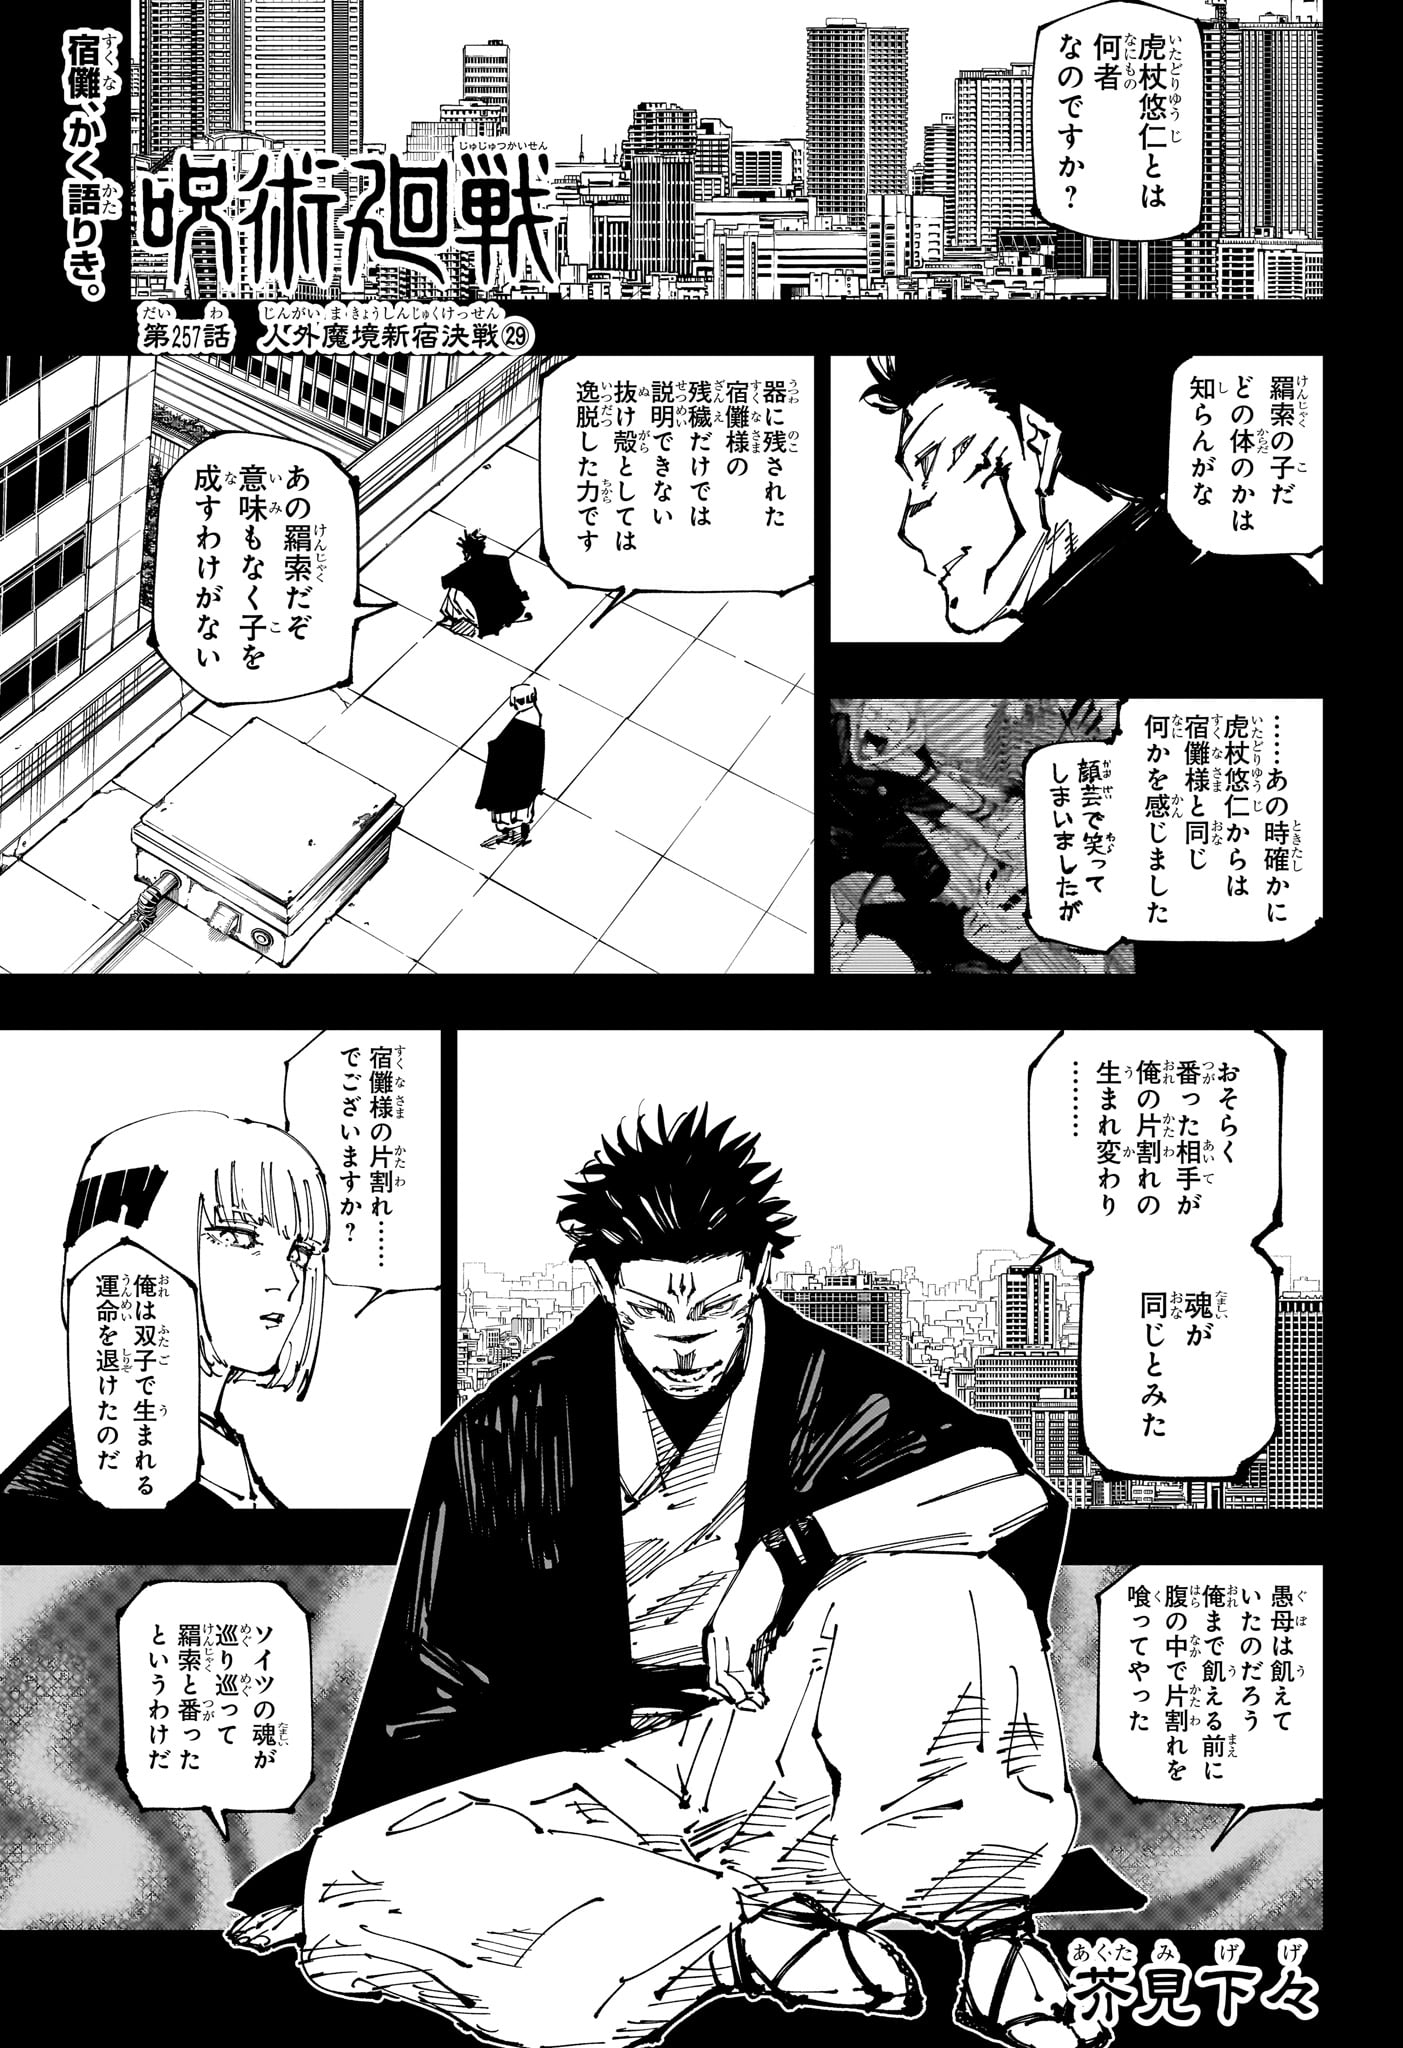 Jujutsu Kaisen - Chapter 257 - Page 1